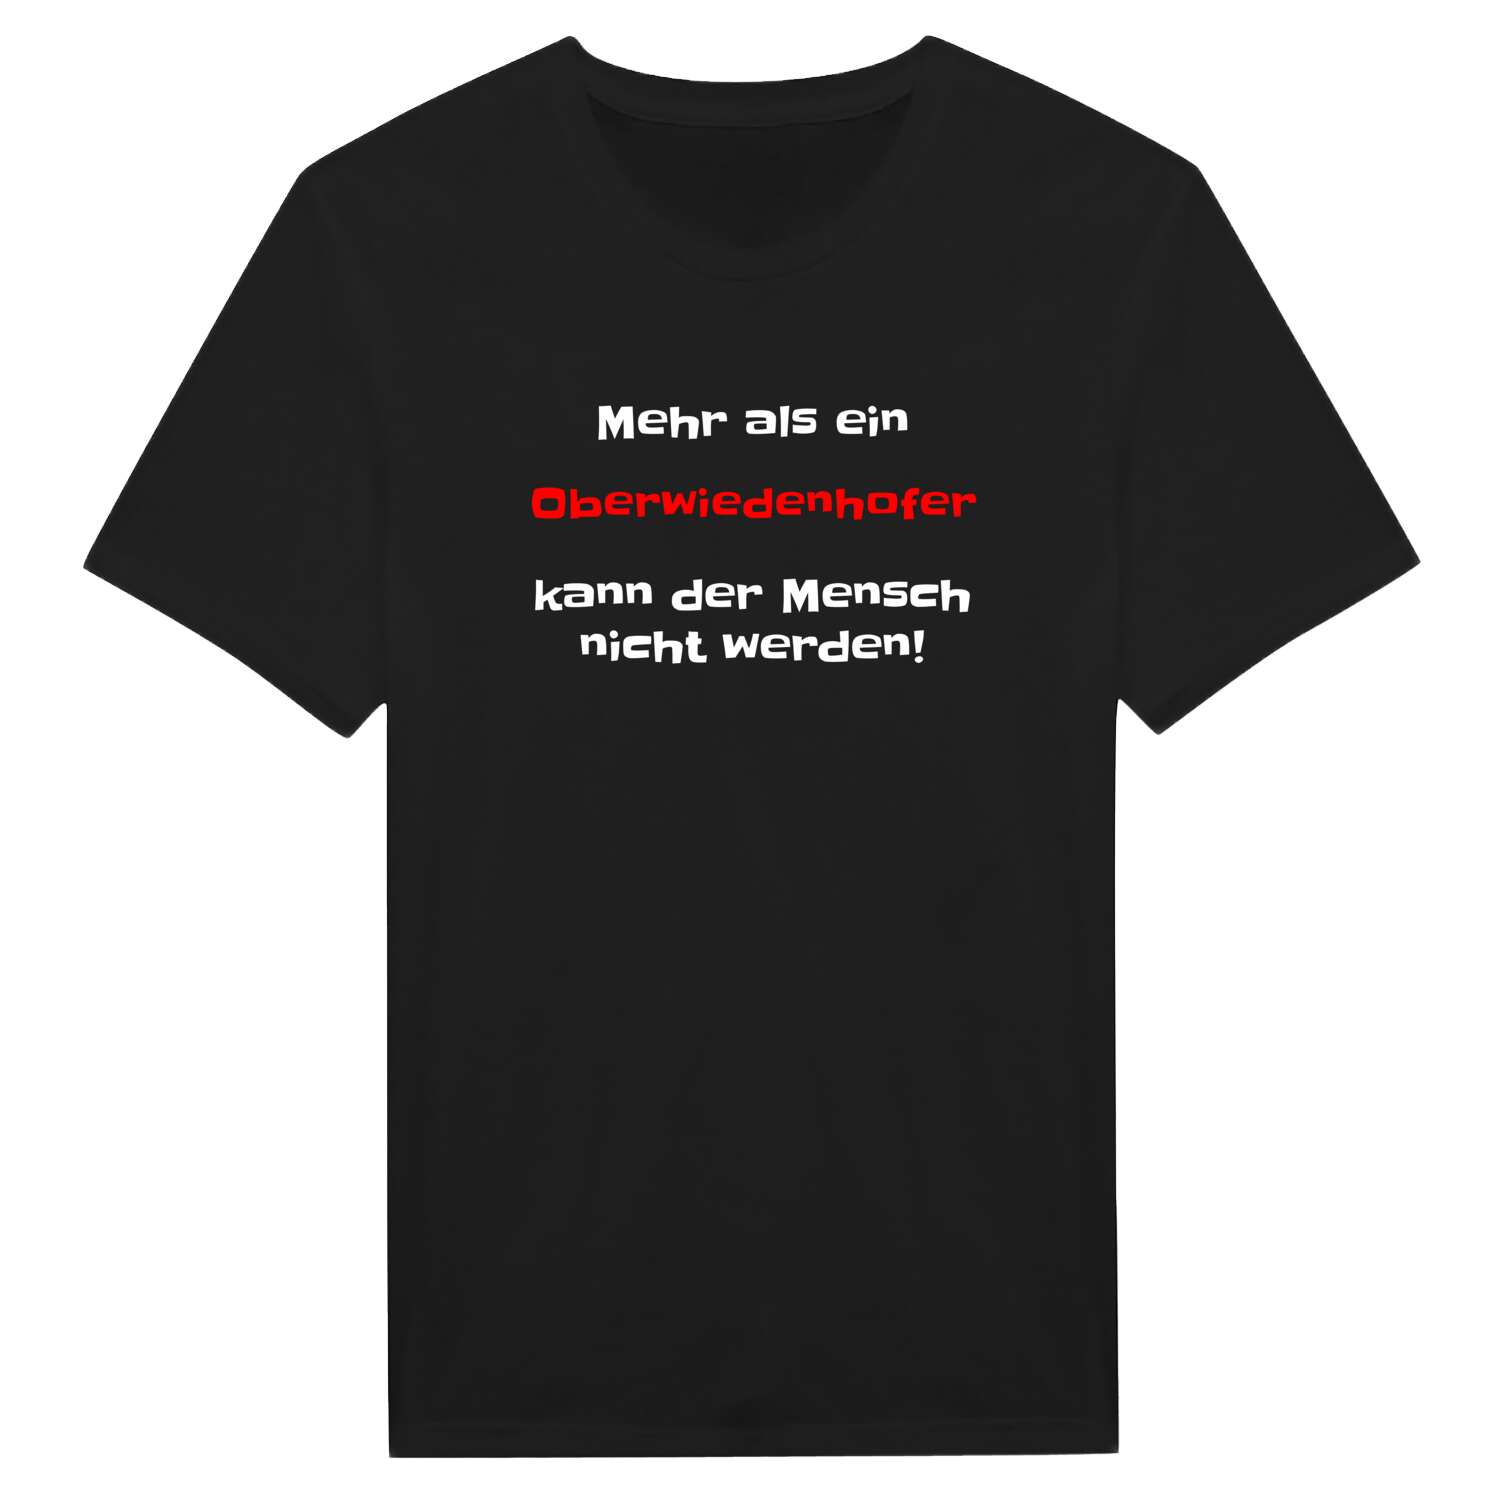 Oberwiedenhof T-Shirt »Mehr als ein«